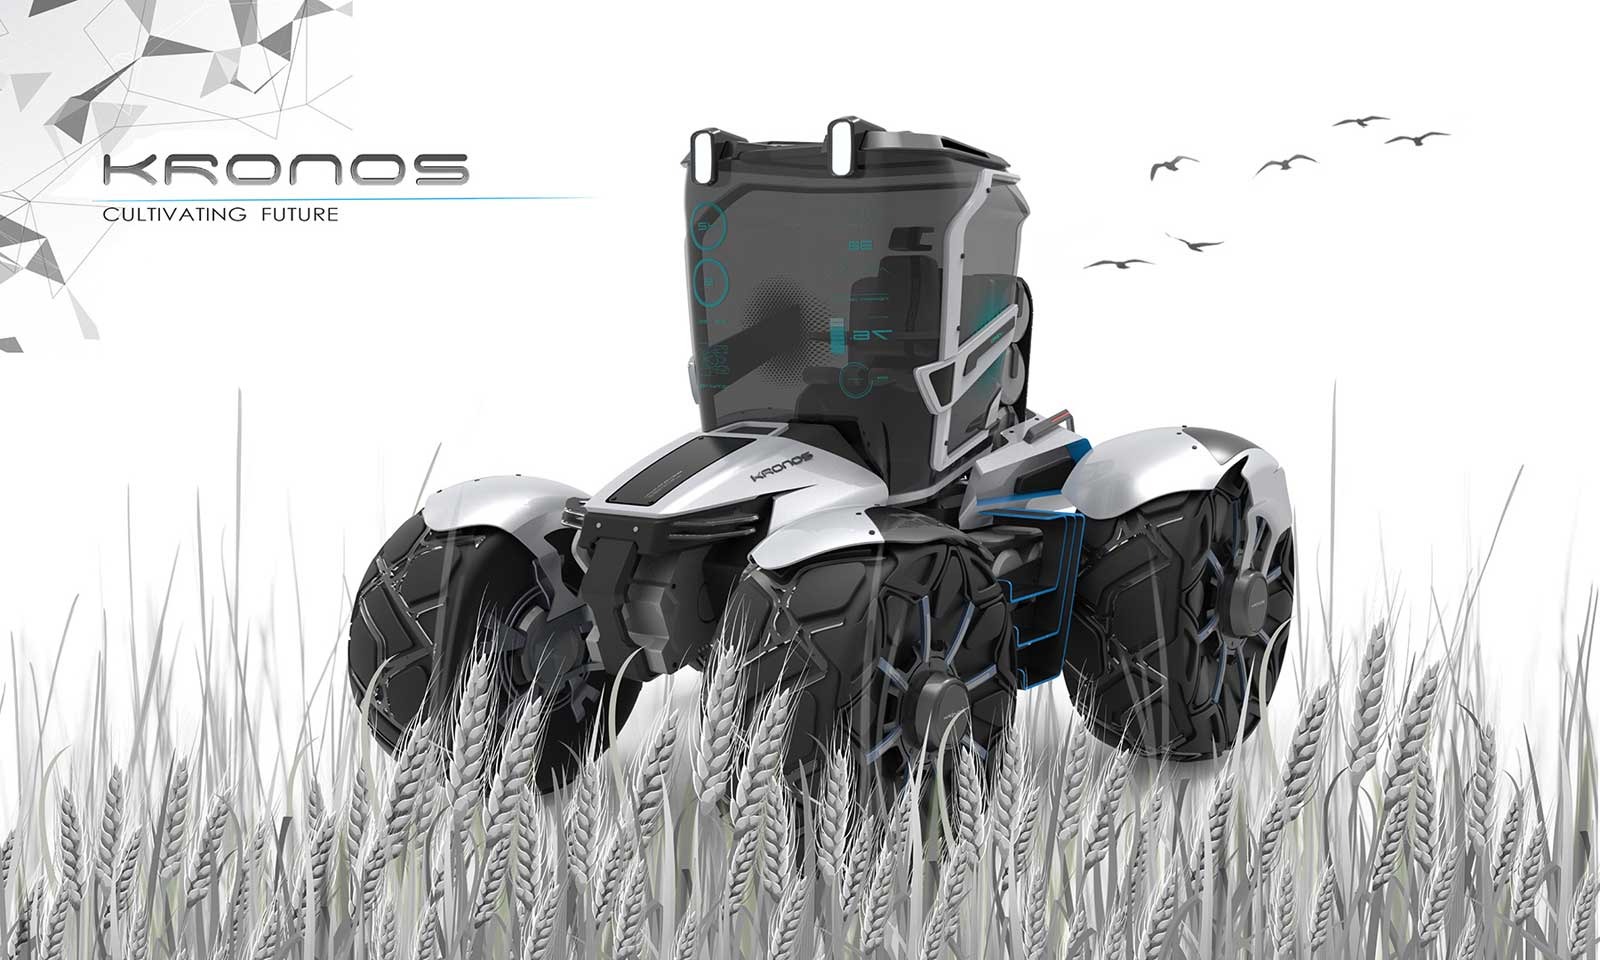 maquinas agricolas para el futuro2